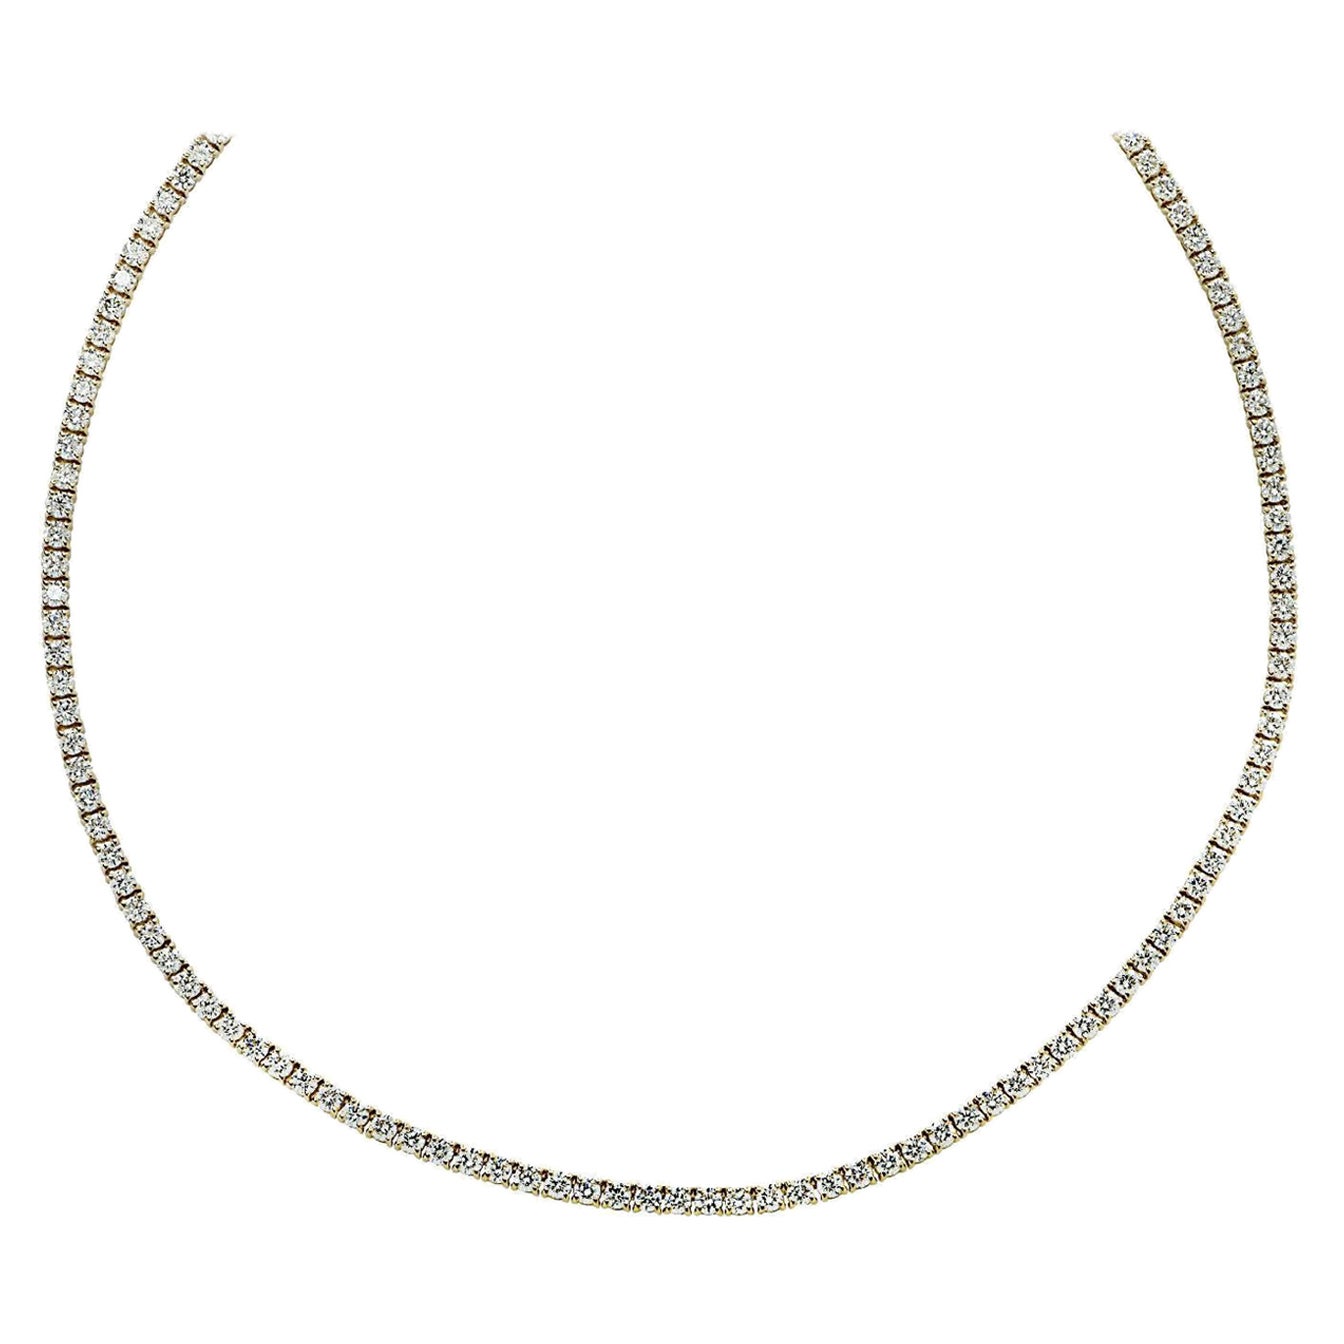 Vivid Diamonds 6.37 Carat Straight Line Diamond Tennis Necklace